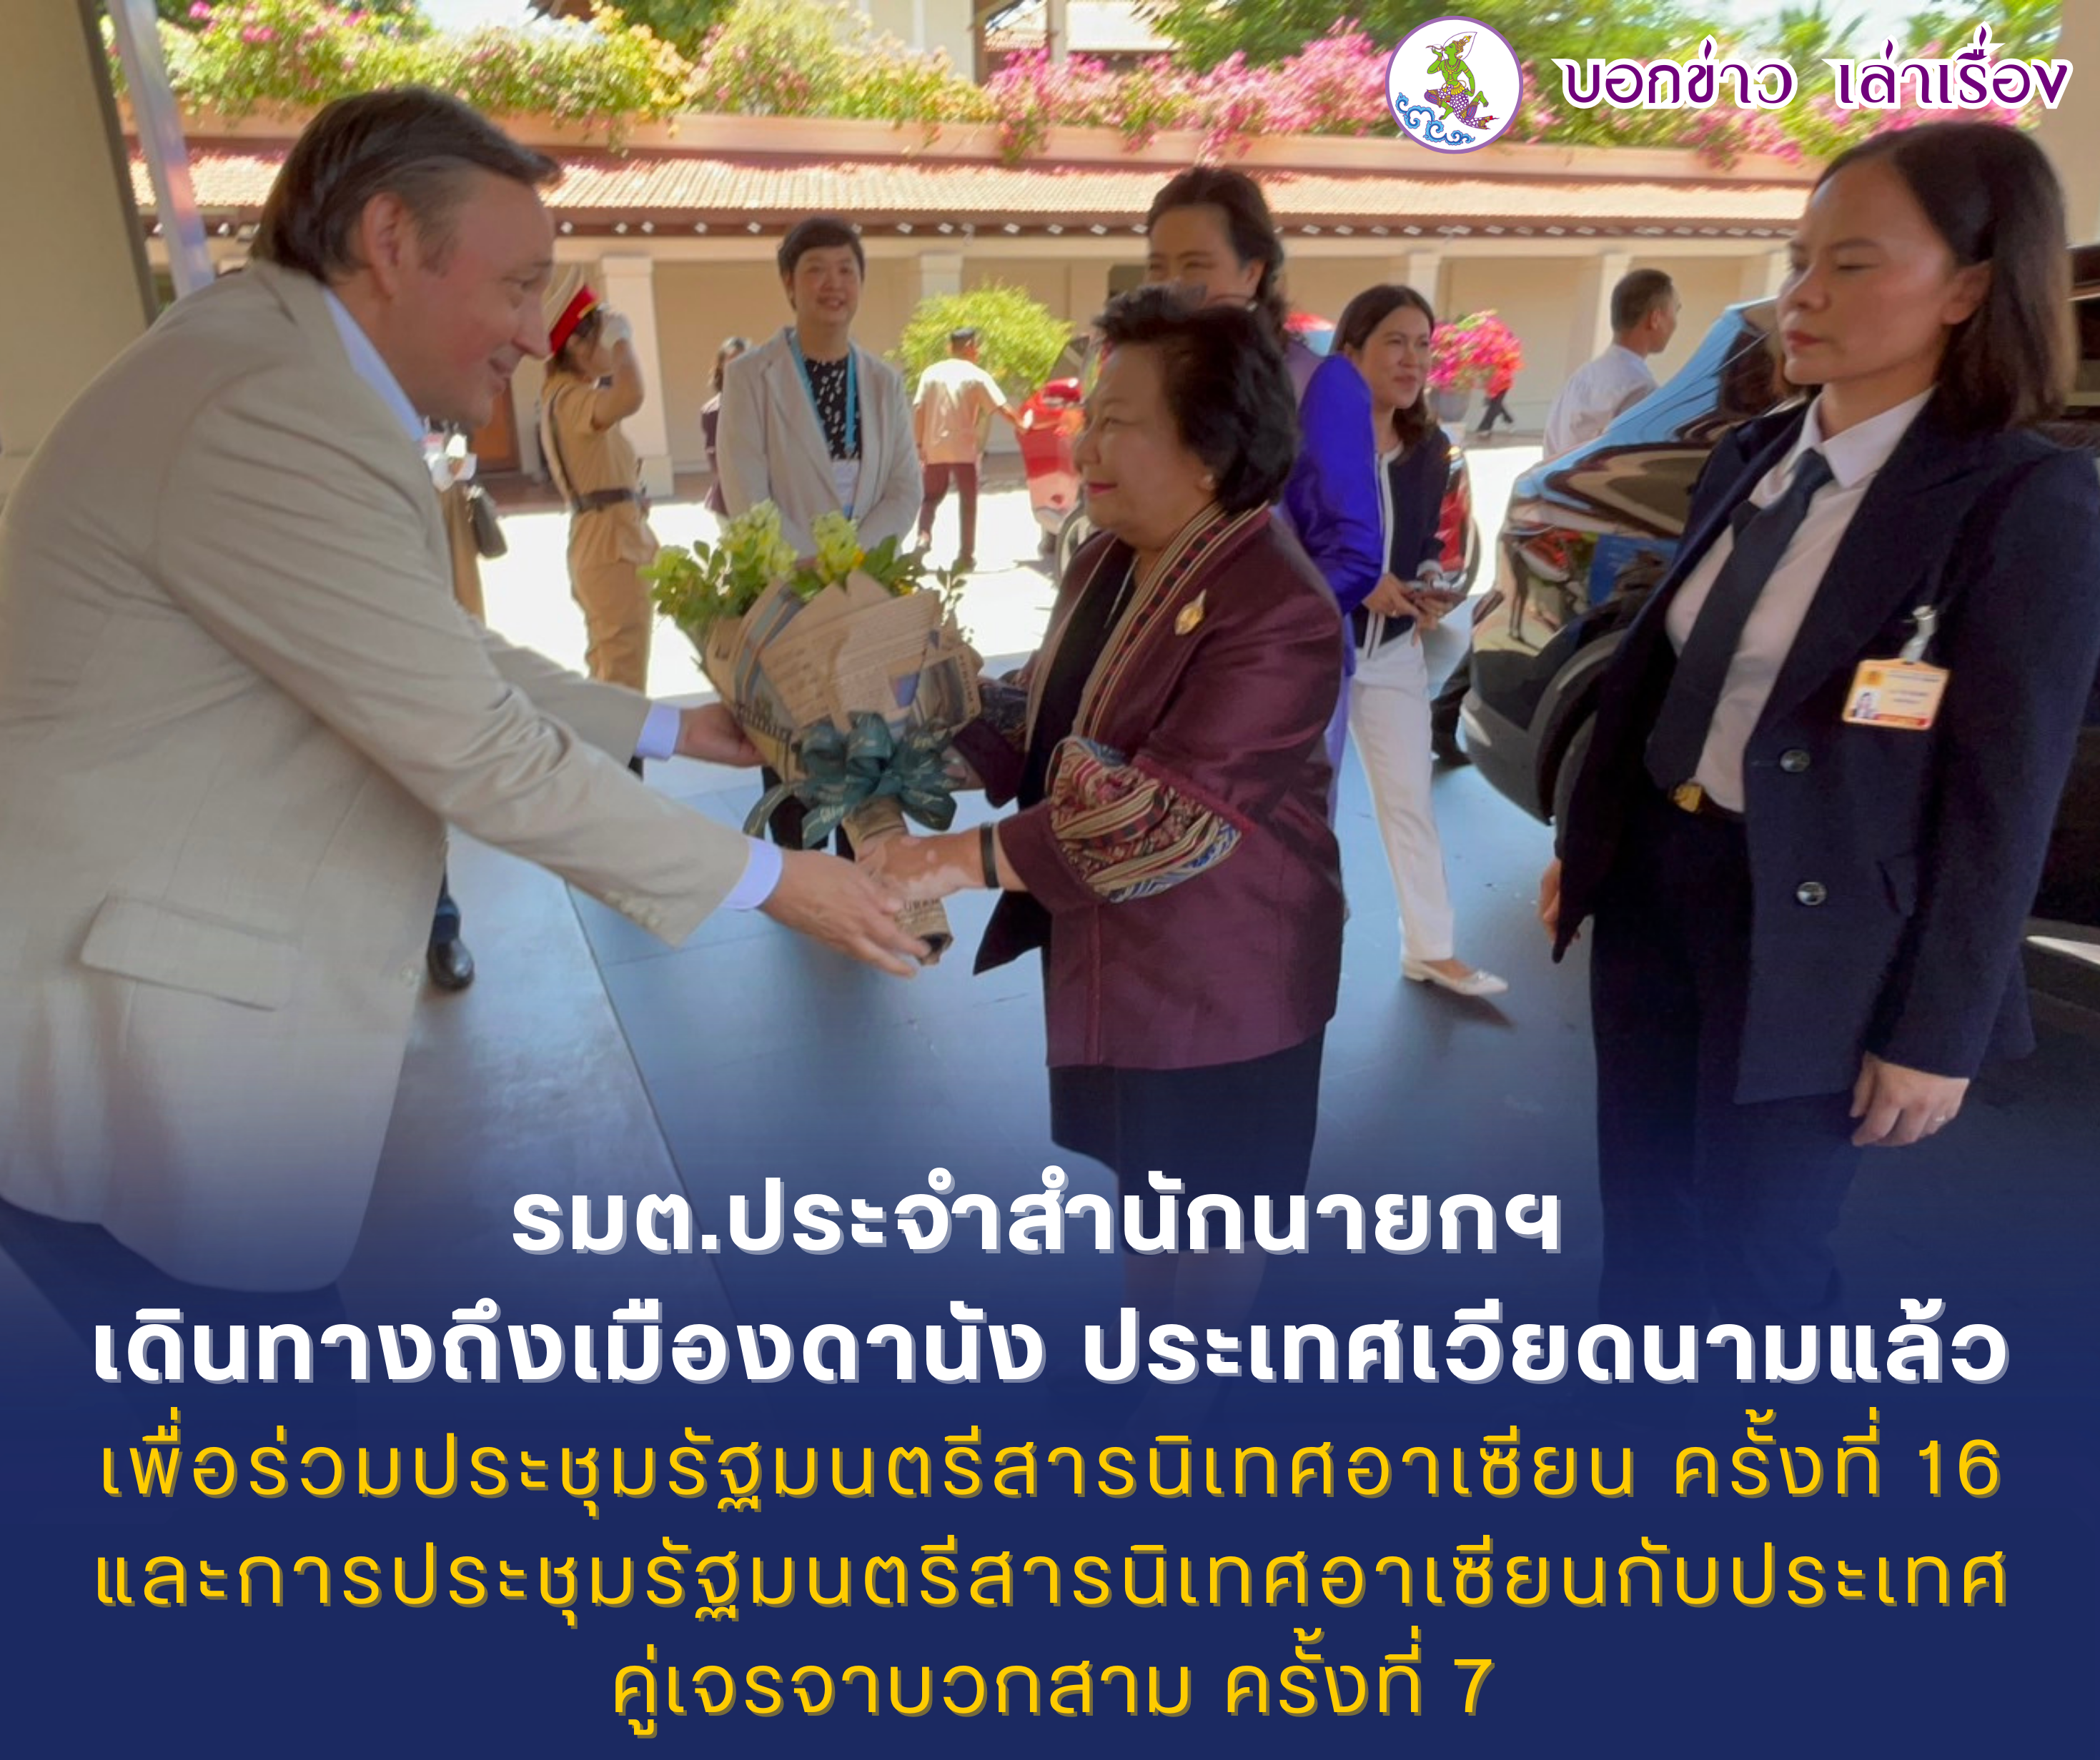 รัฐมนตรีประจำสำนักนายกรัฐมนตรี เดินทางถึงเมืองดานัง เพื่อร่วมประชุมรัฐมนตรีสารนิเทศอาเซียน ครั้งที่ 16 และการประชุมรัฐมนตรีสารนิเทศอาเซียนกับประเทศคู่เจรจาบวกสาม ครั้งที่ 7